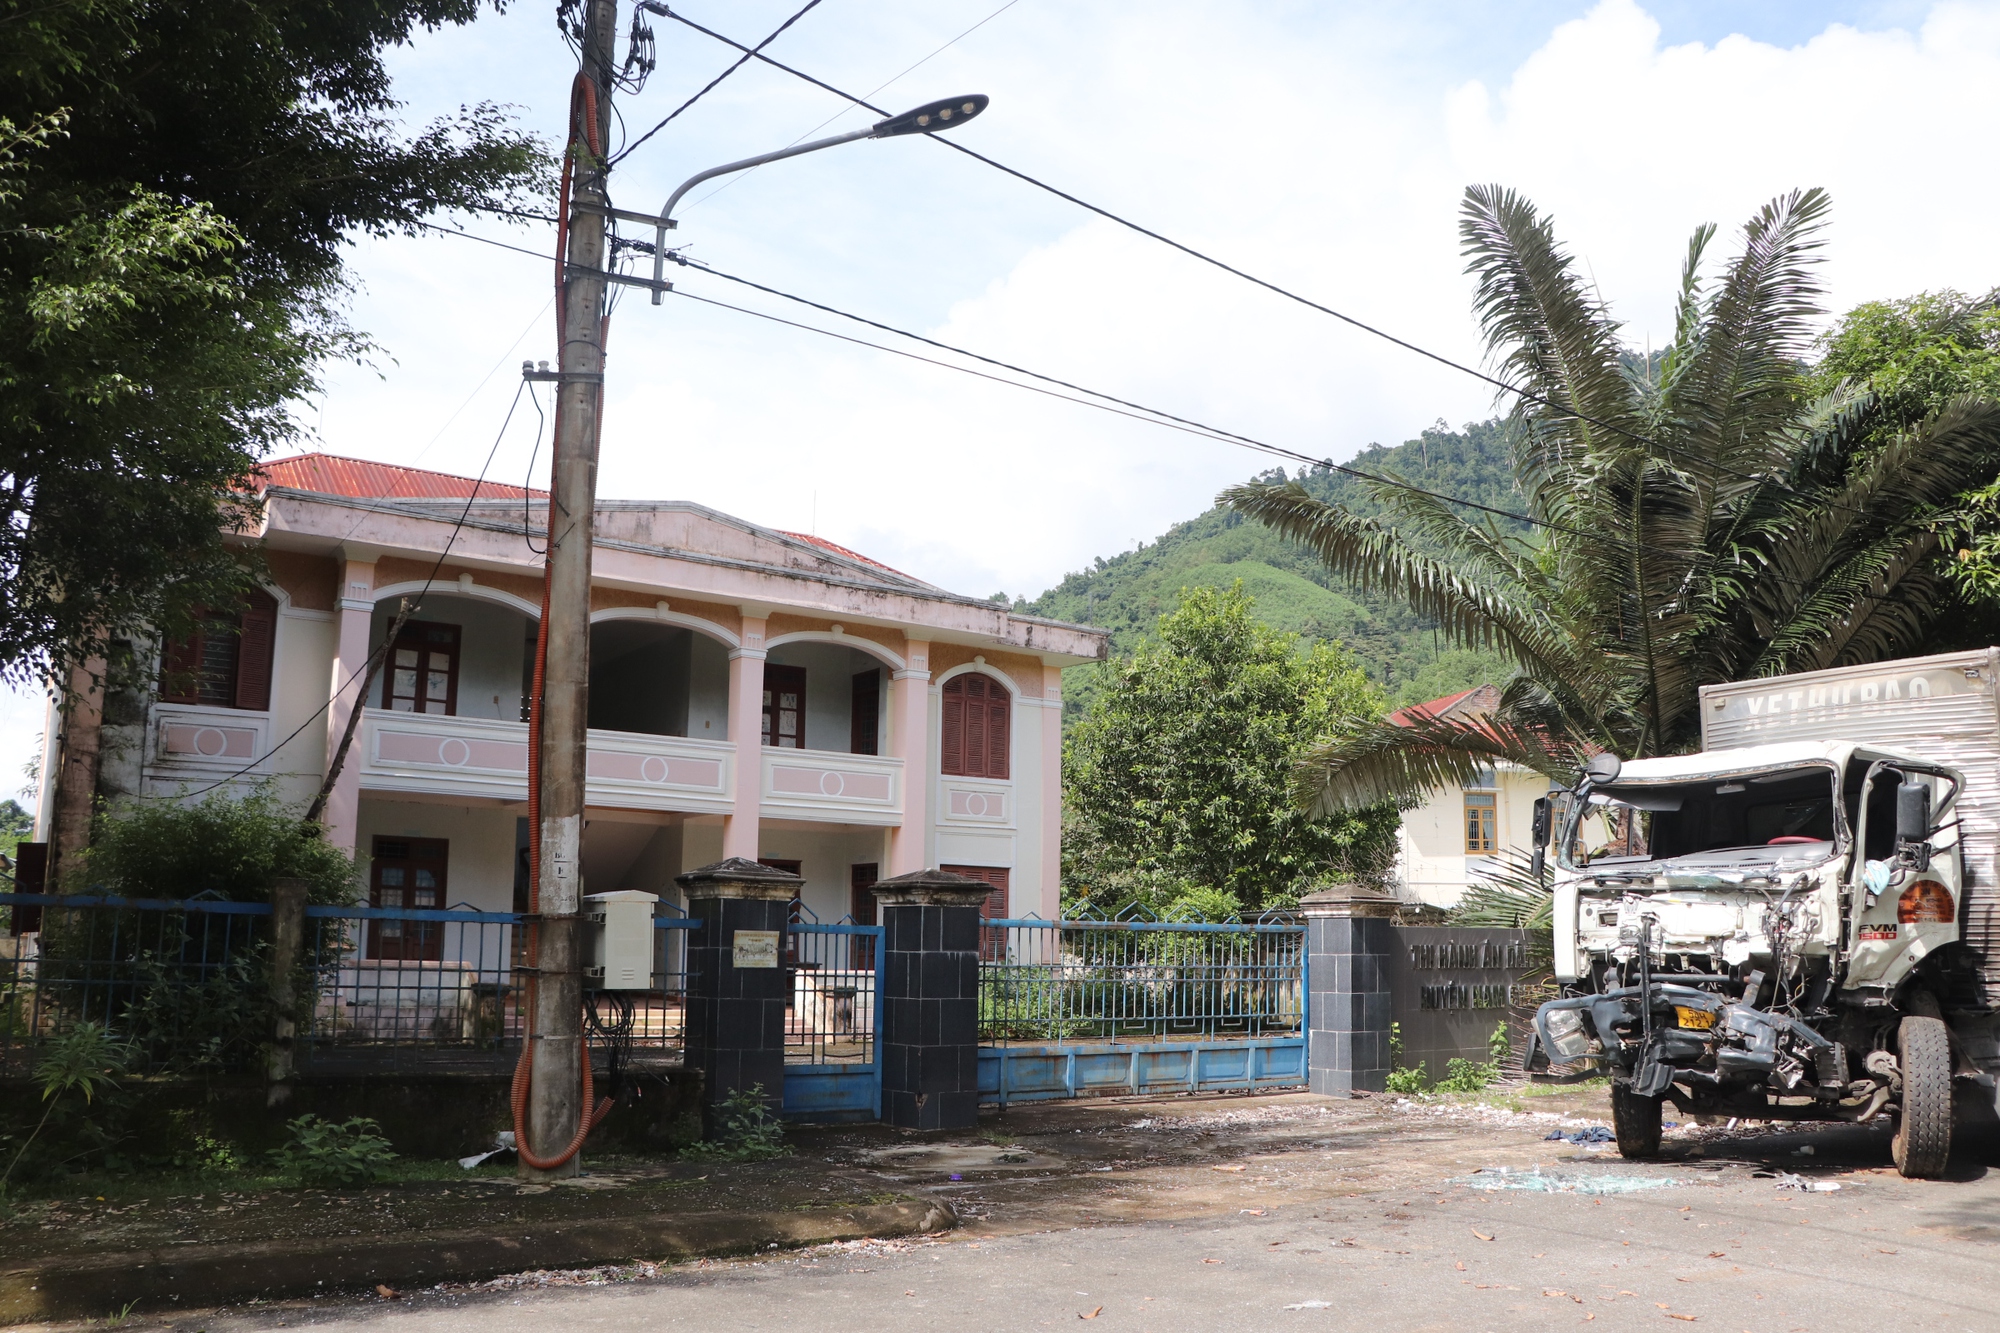 Hàng loạt trụ sở bỏ hoang lãng phí ở huyện miền núi nghèo Quảng Nam - Ảnh 13.